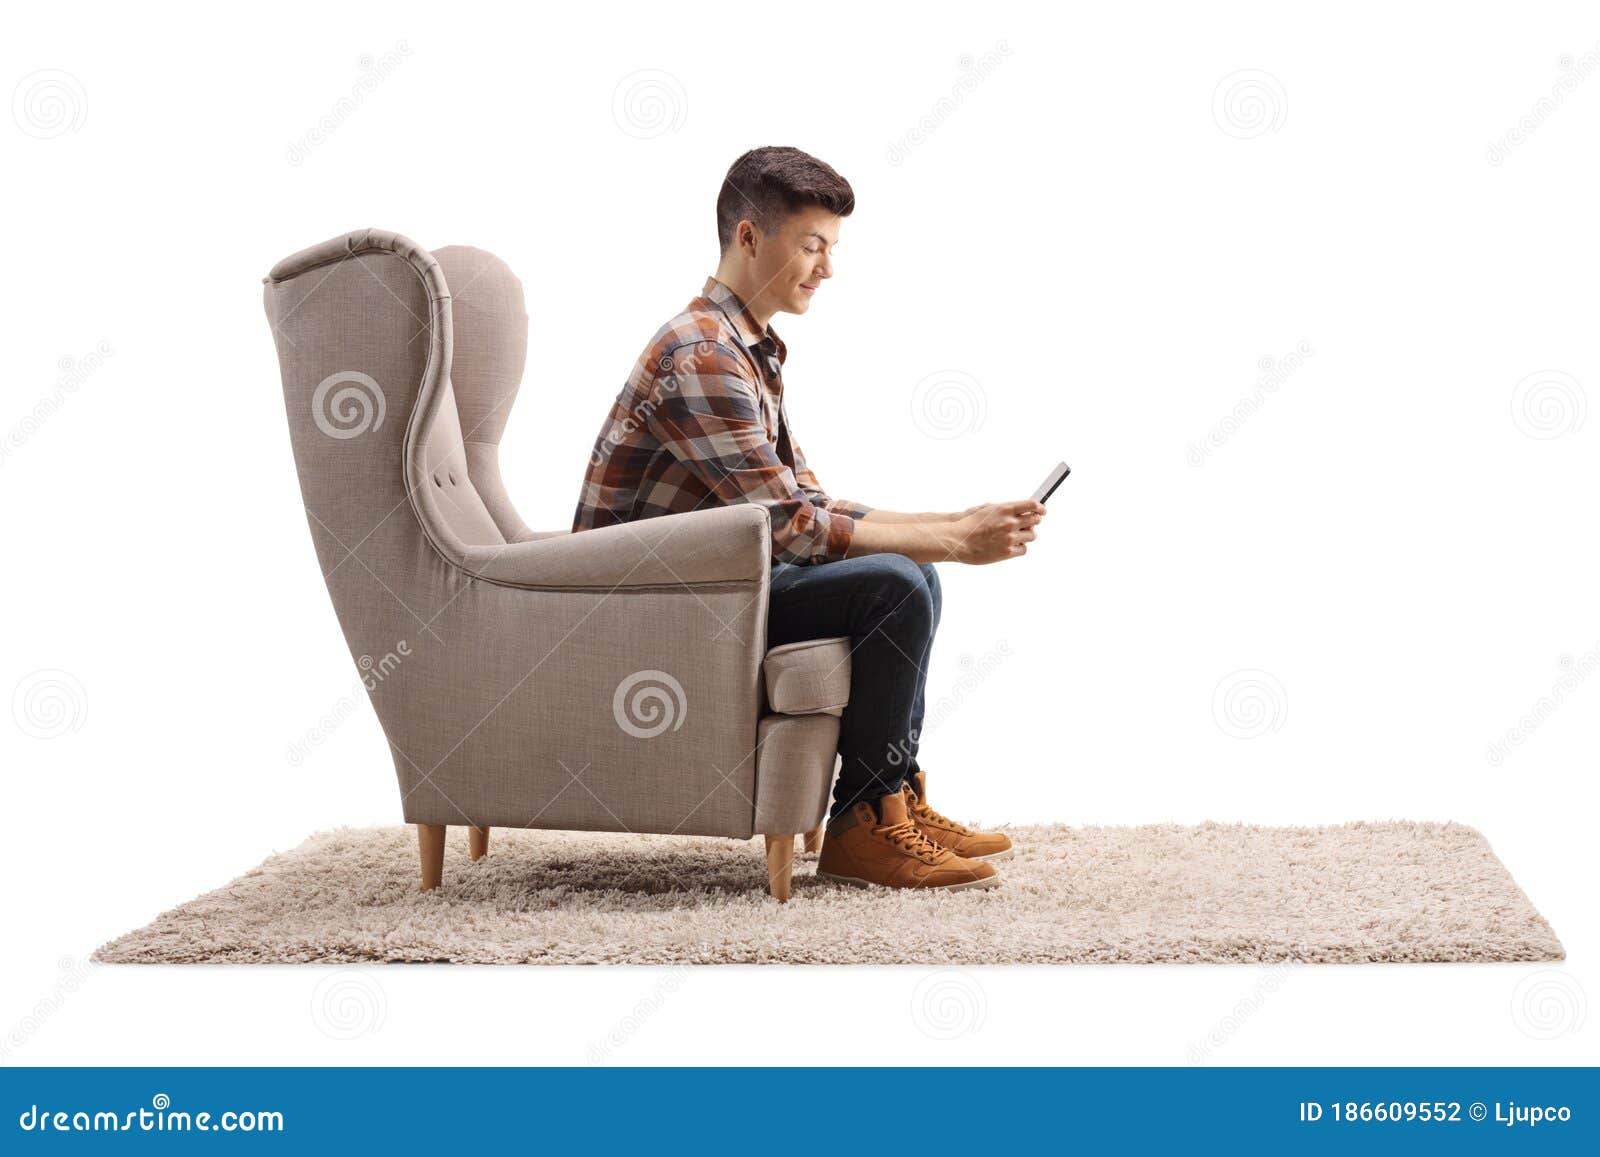 А я посижу напротив в кресле песня. Человек в кресле боком. Мужчина сидит в кресле. Сидит в кресле мужчина боком. Мальчик сидит в кресле.